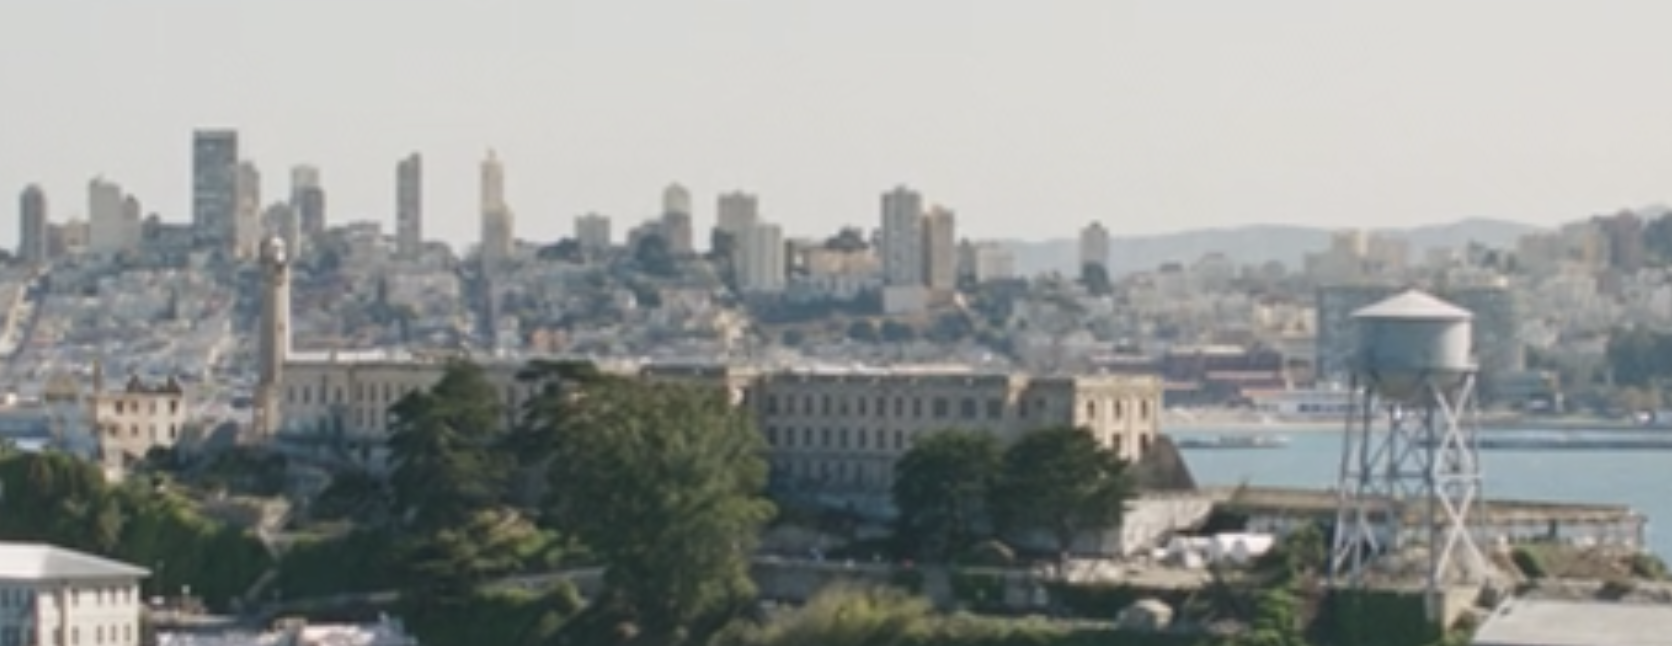 Alcatraz: Prison Escape - Wikipedia